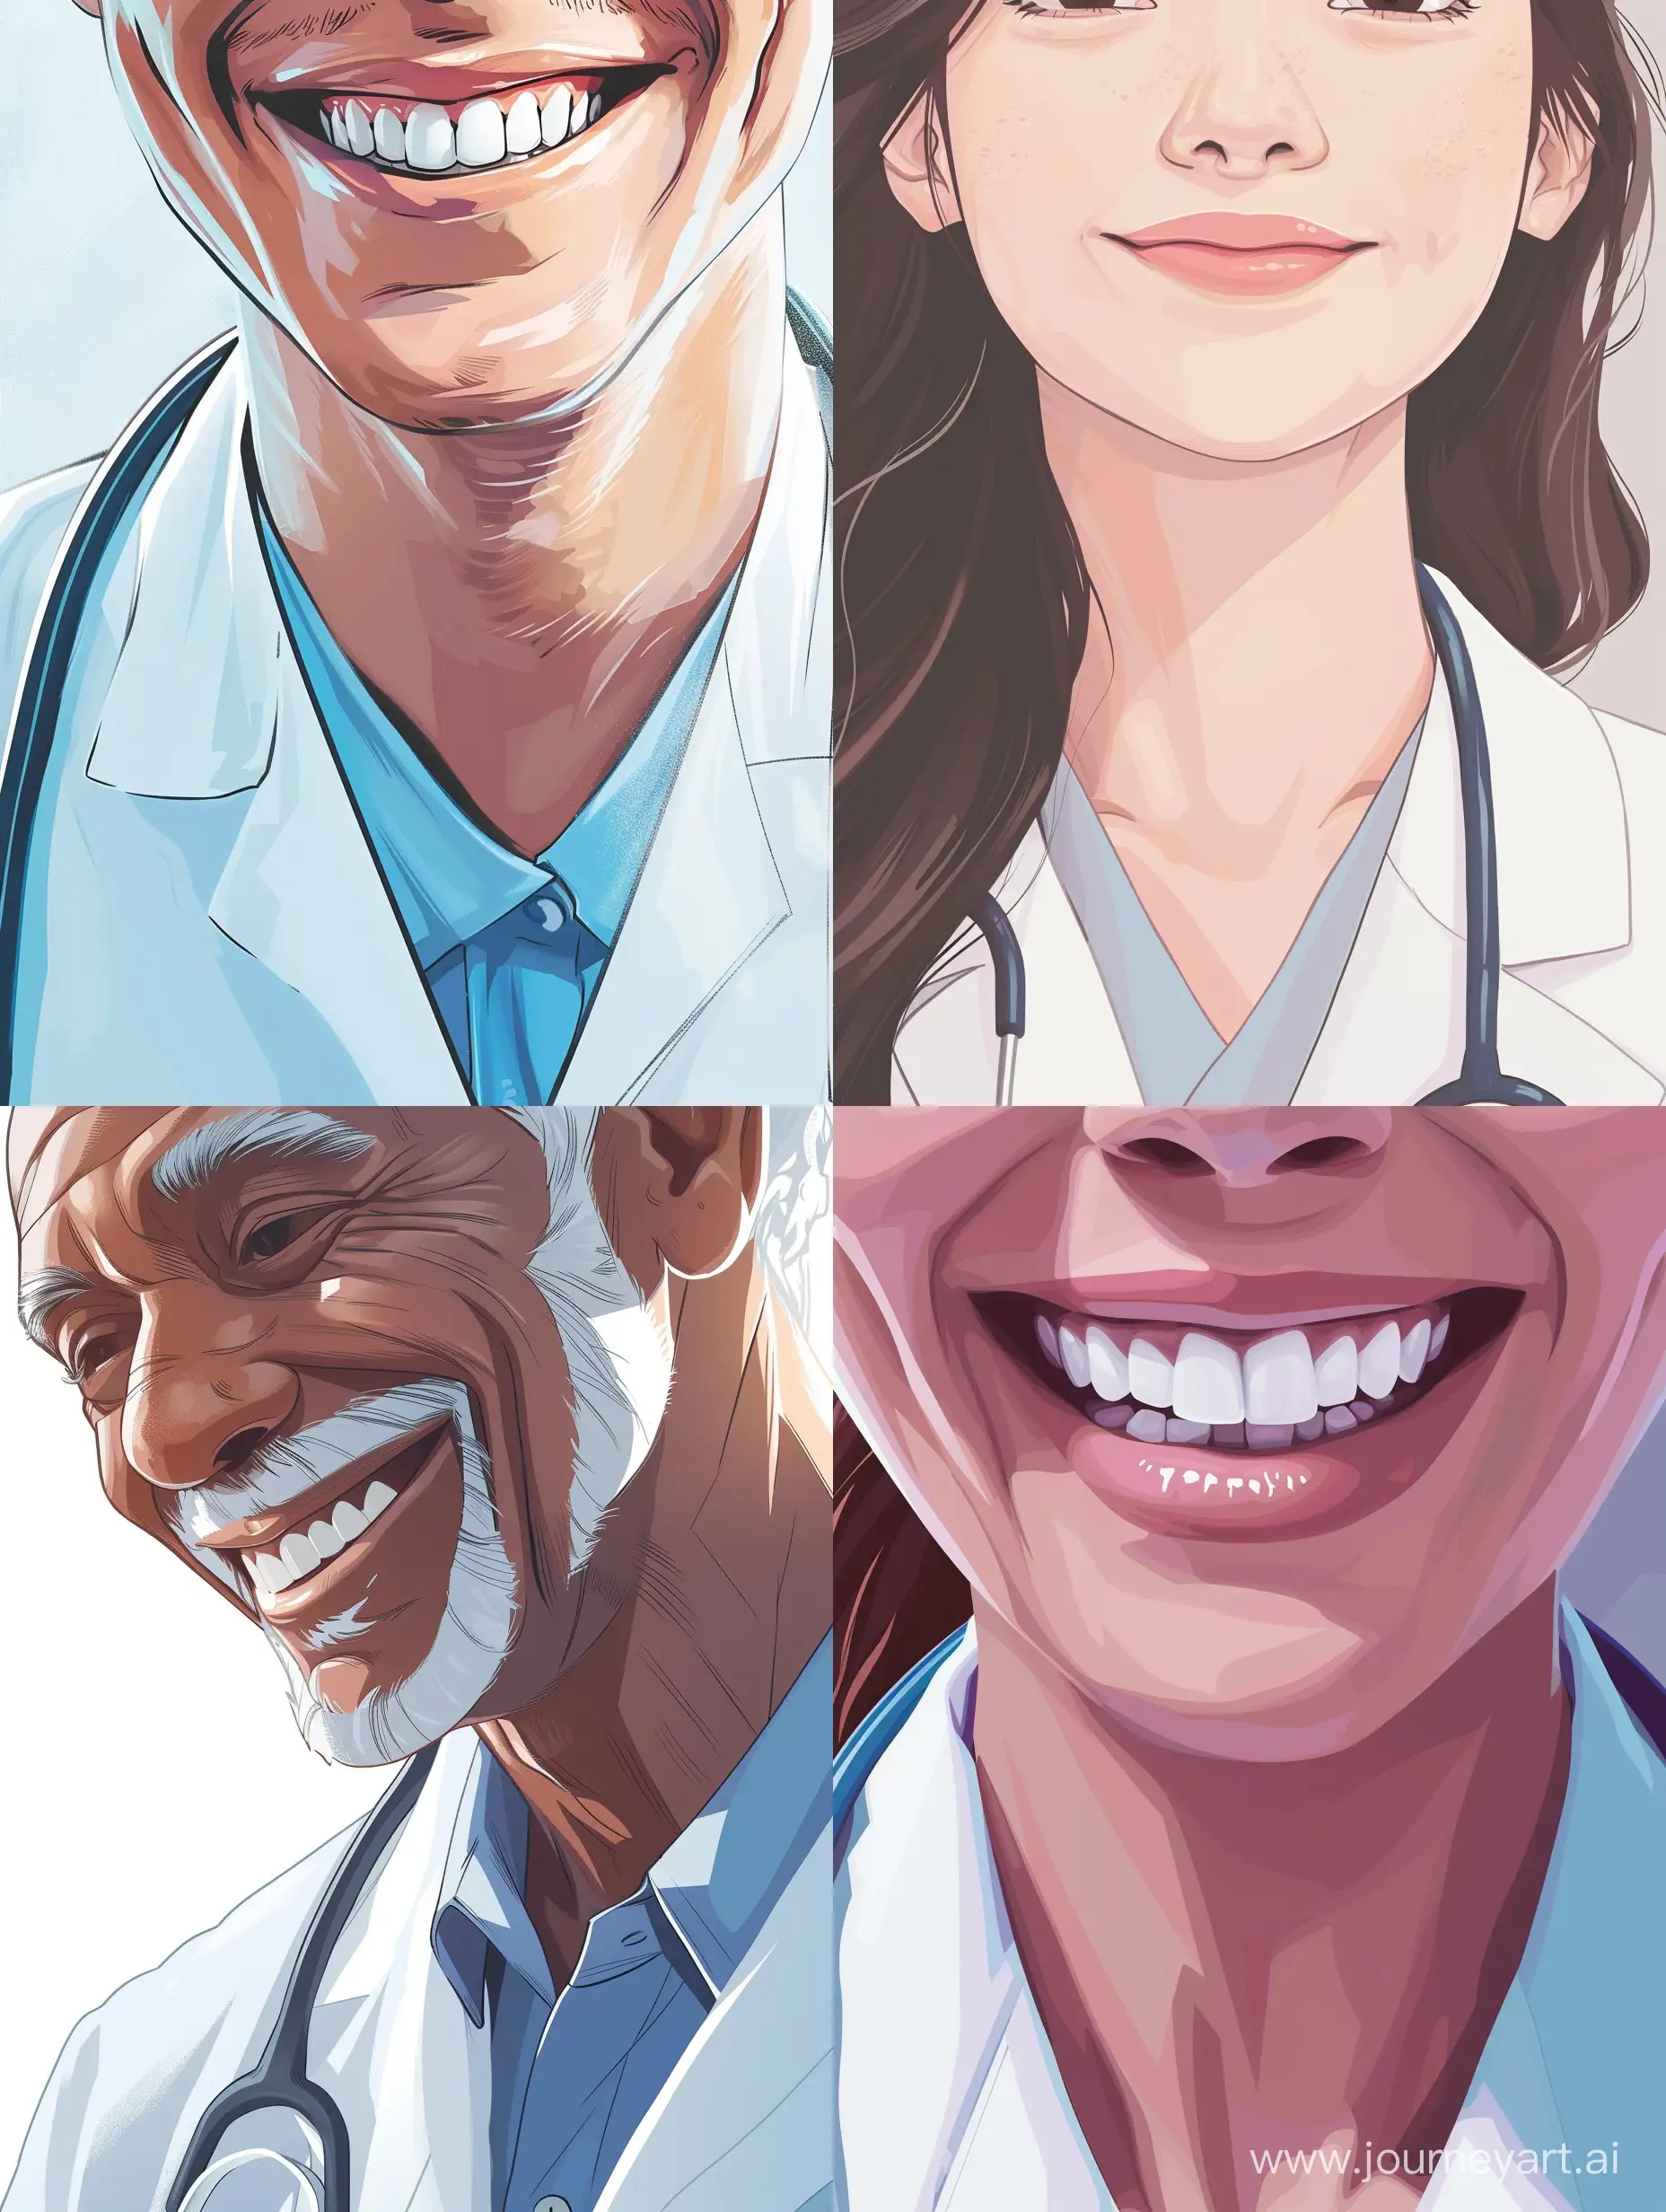 иллюстрация, добрый доктор,  мягкая улыбка, добрый взгляд, детализированное изображение, крупный план